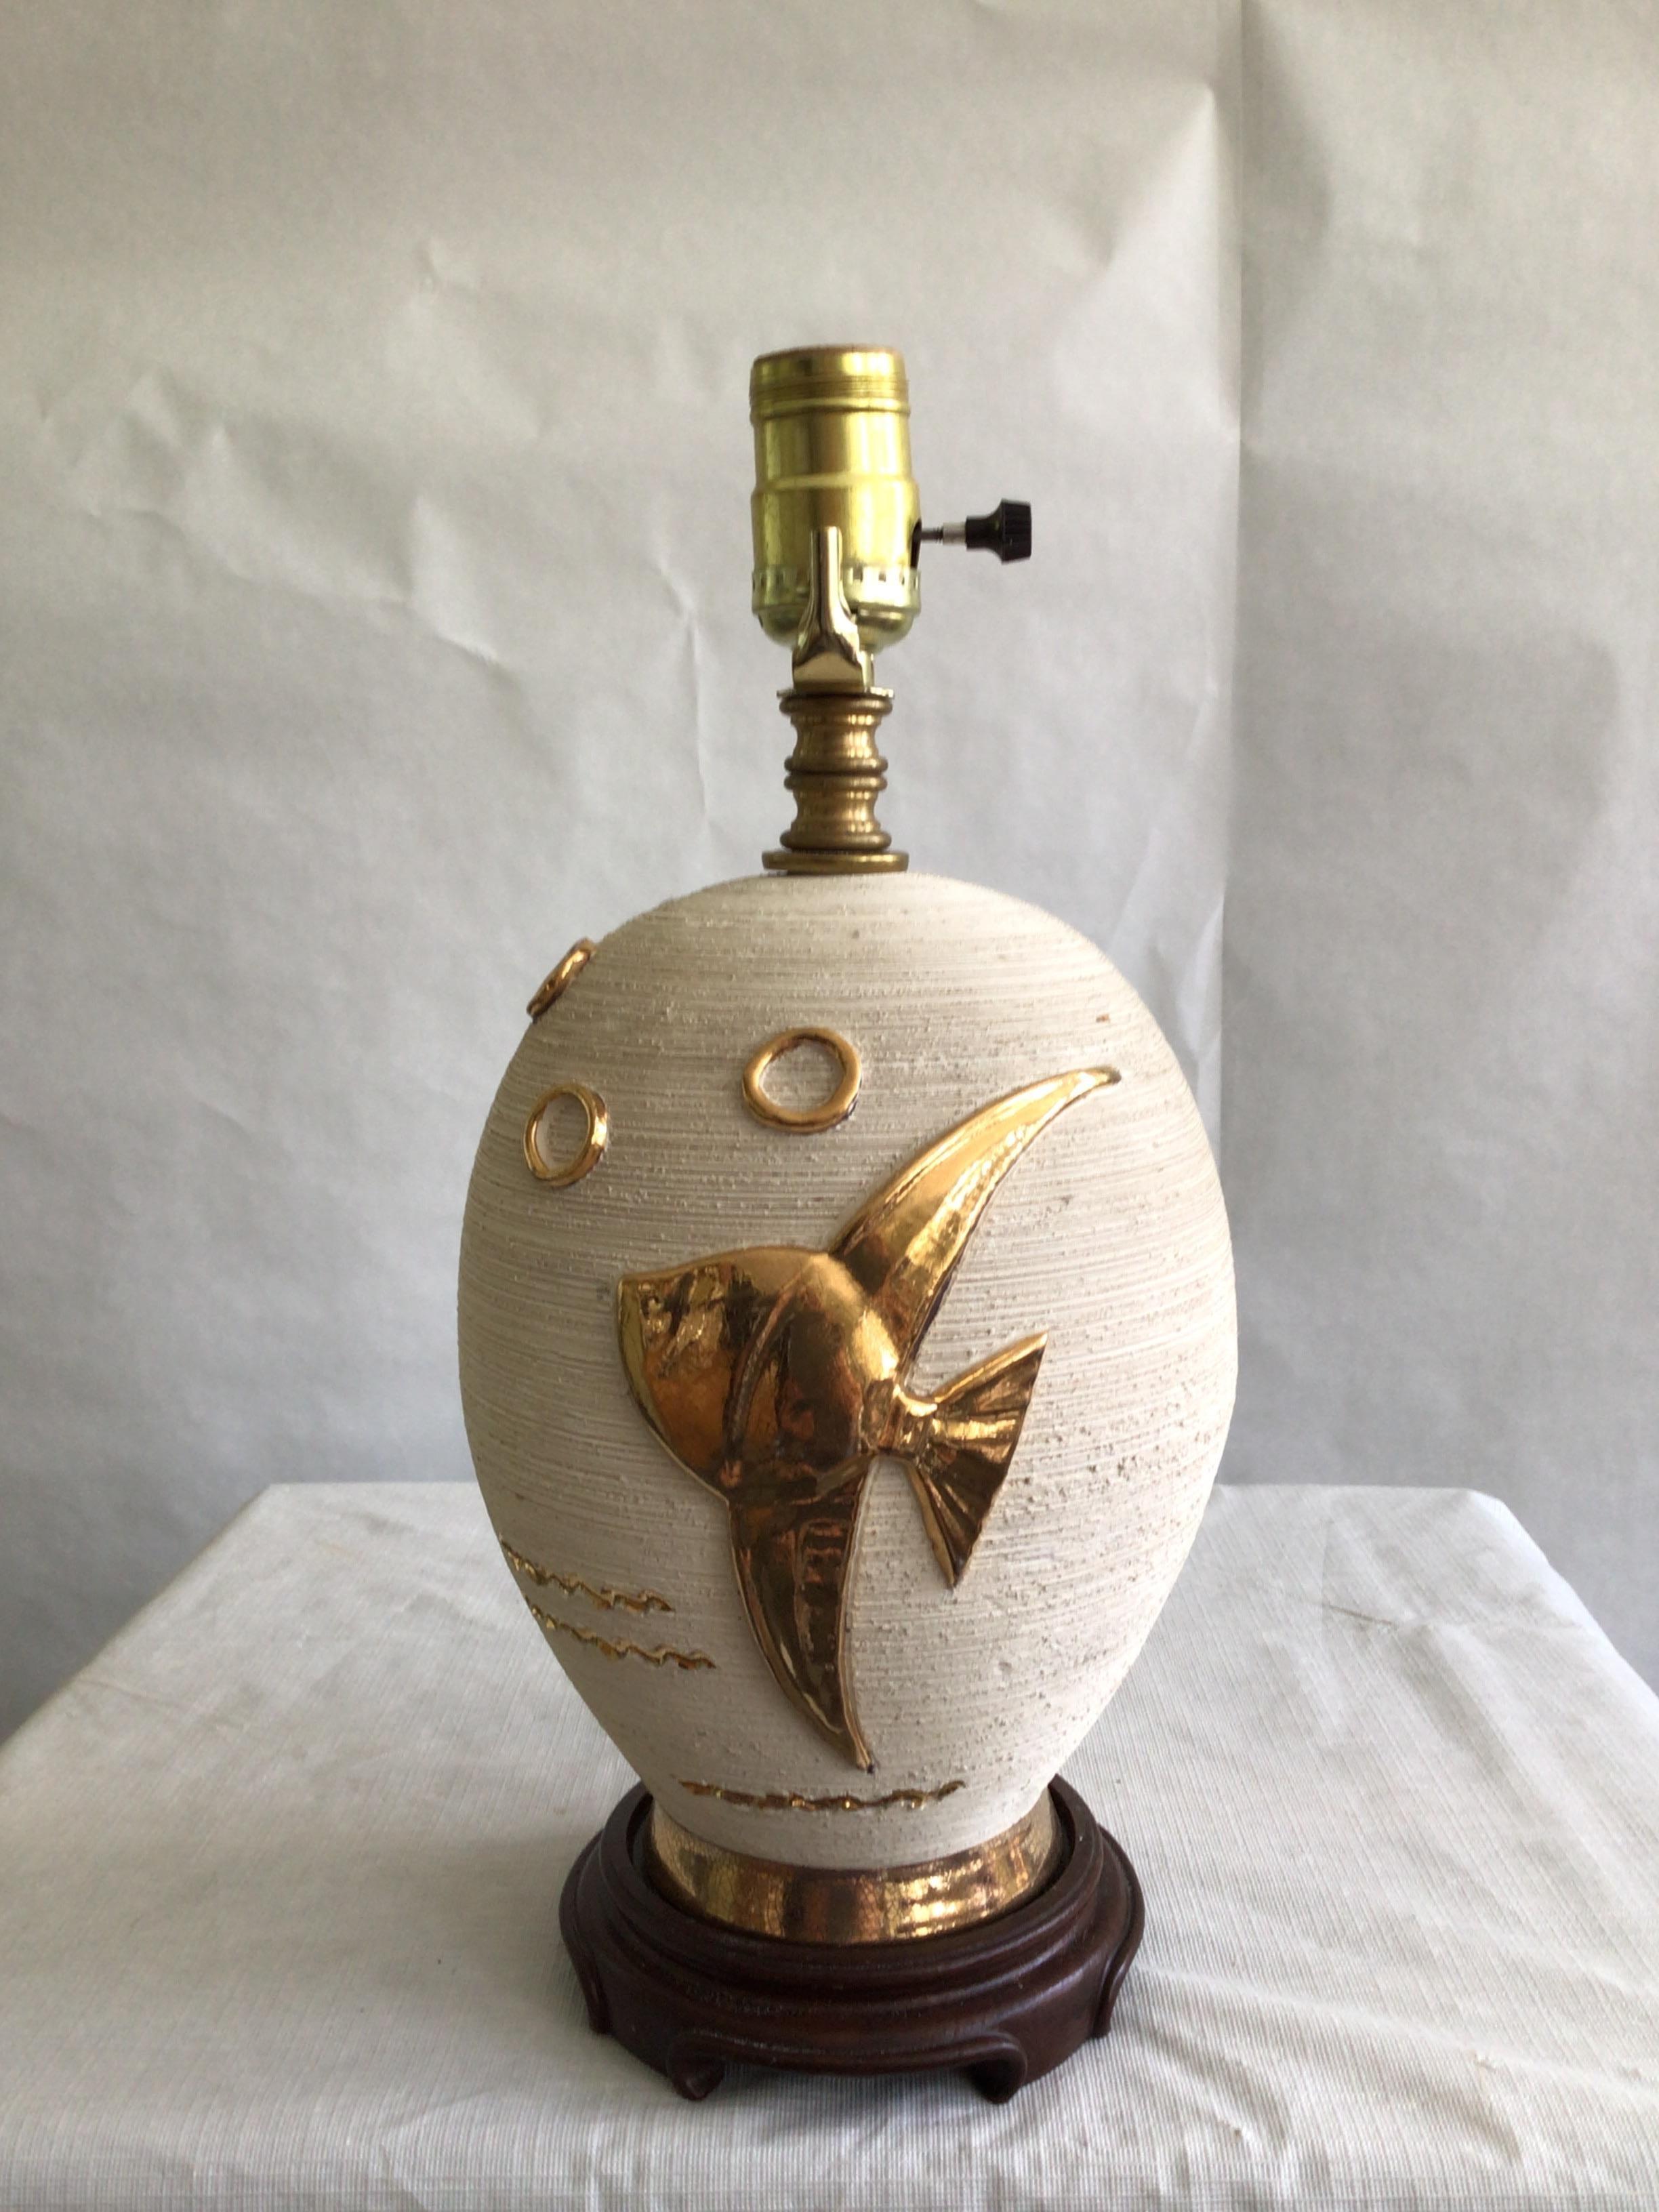 Lampe en céramique des années 1960 avec application de poissons sur base en bois
Texture crème rugueuse avec application dorée brillante et lisse d'un poisson et de bulles
Hauteur au sommet de la prise
Besoin d'un recâblage
